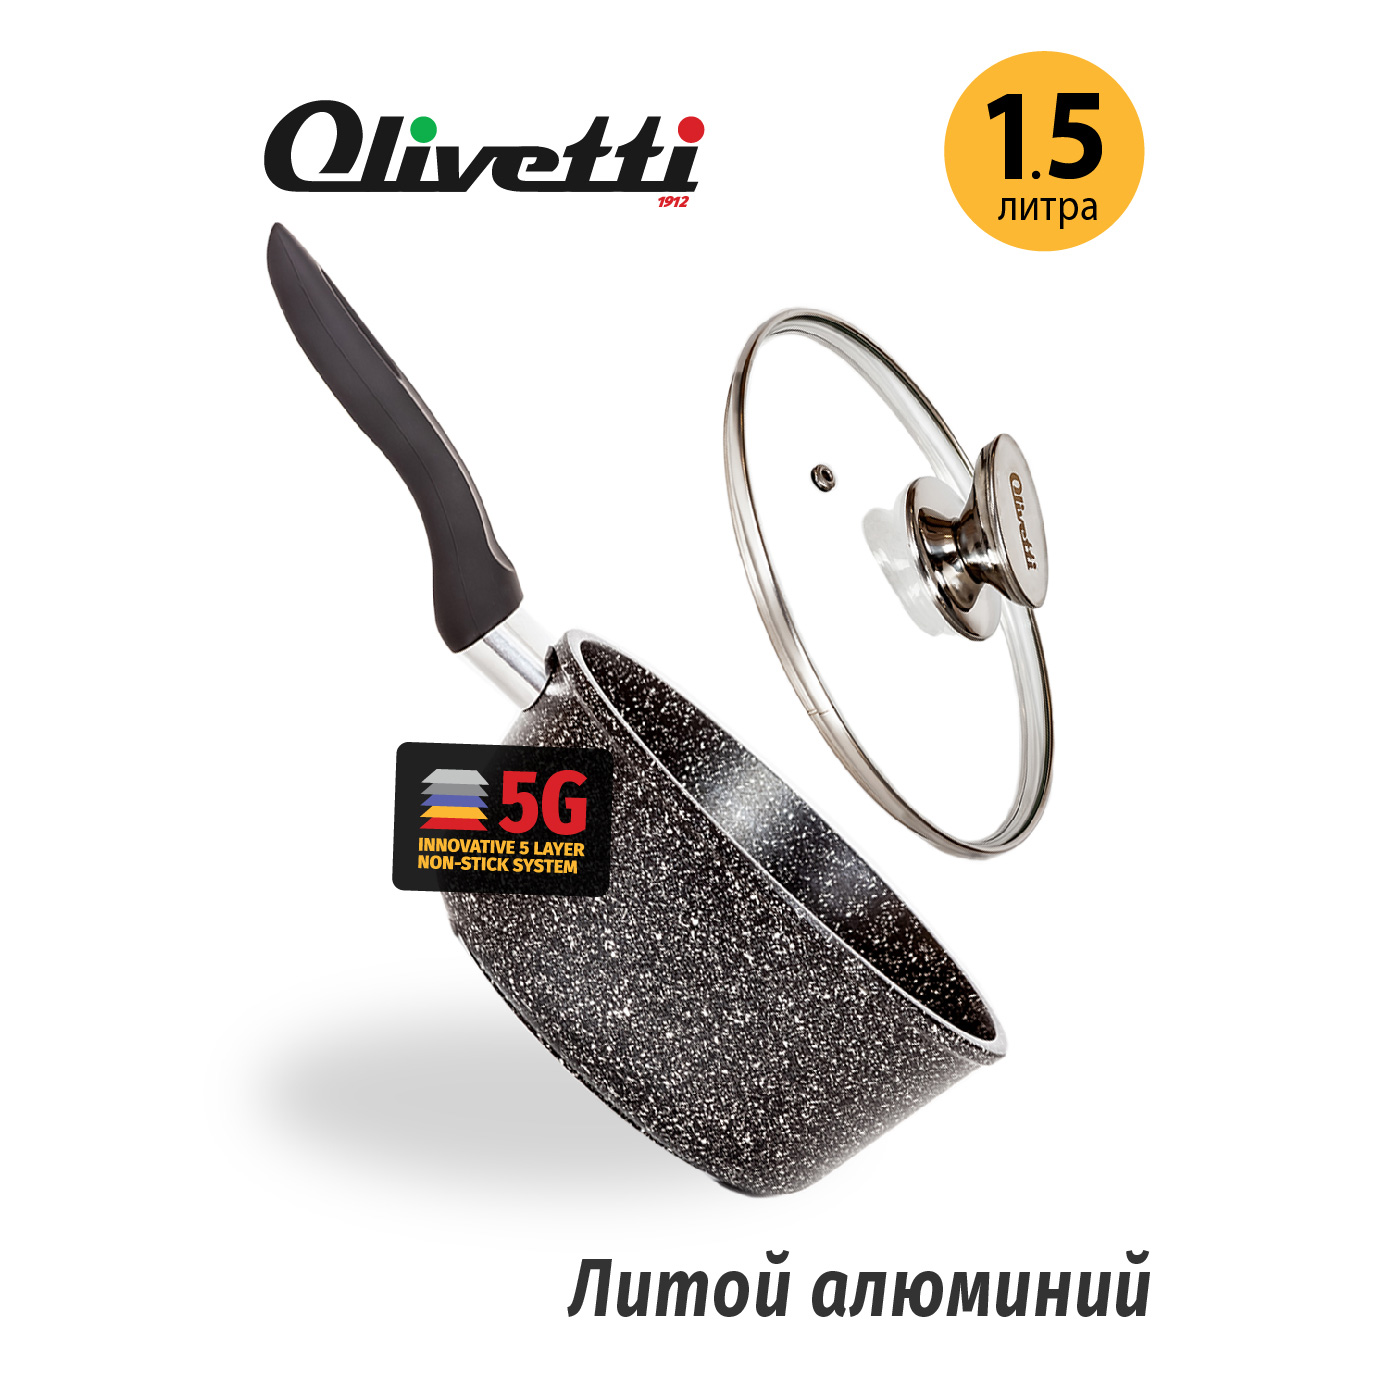 Картинка Алюминиевый ковш Olivetti SP718 18 см/1,5 л по разумной цене купить в интернет магазине mall.su